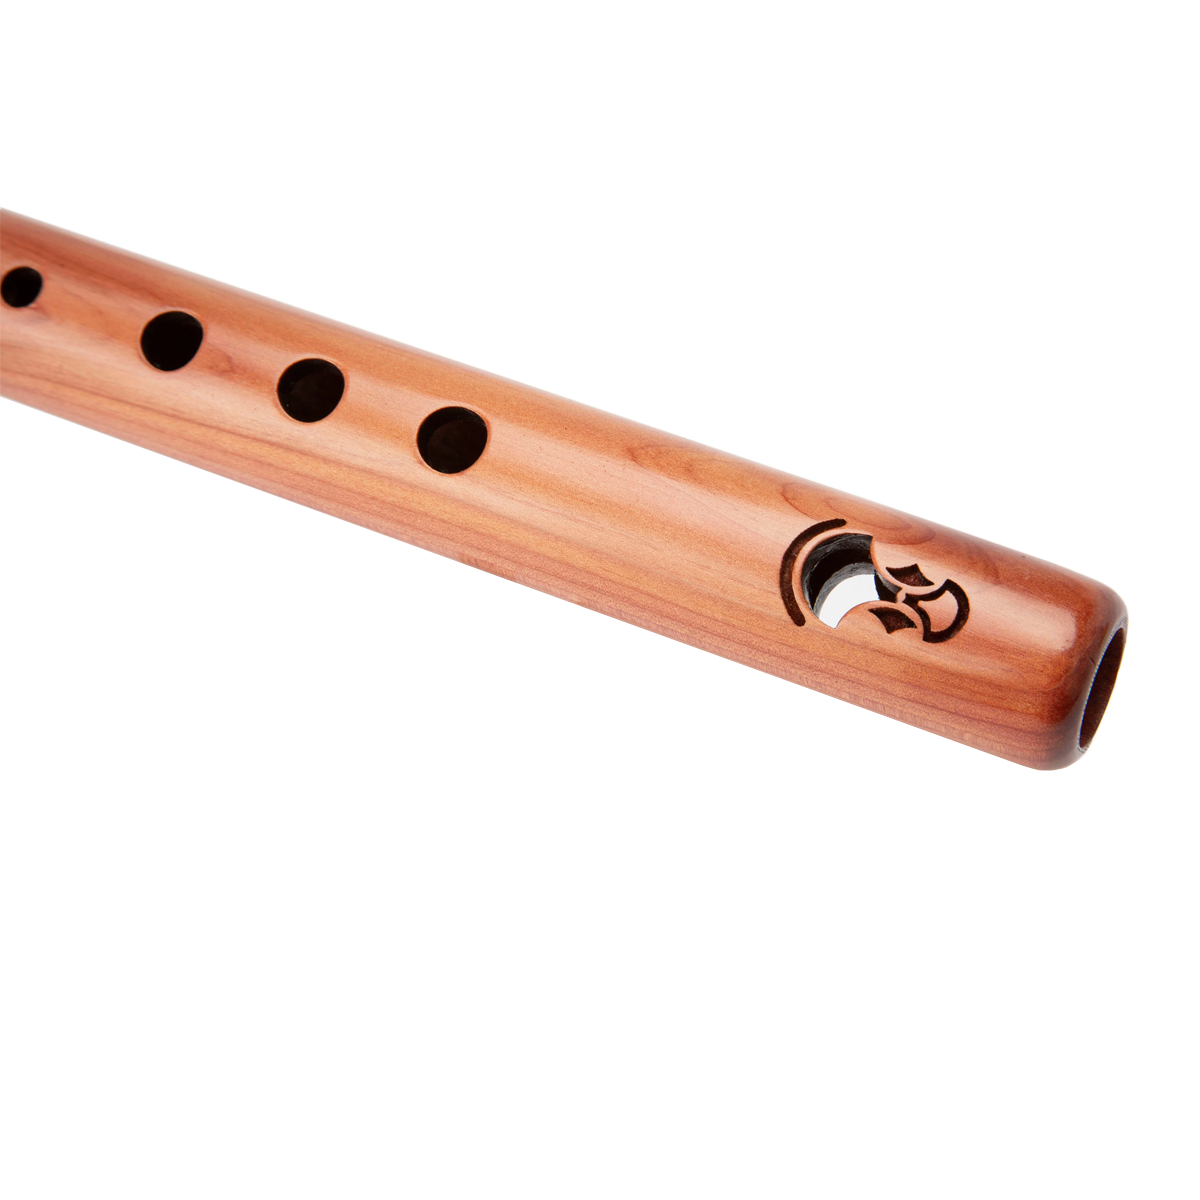  Kestrel High E wooden flute australia